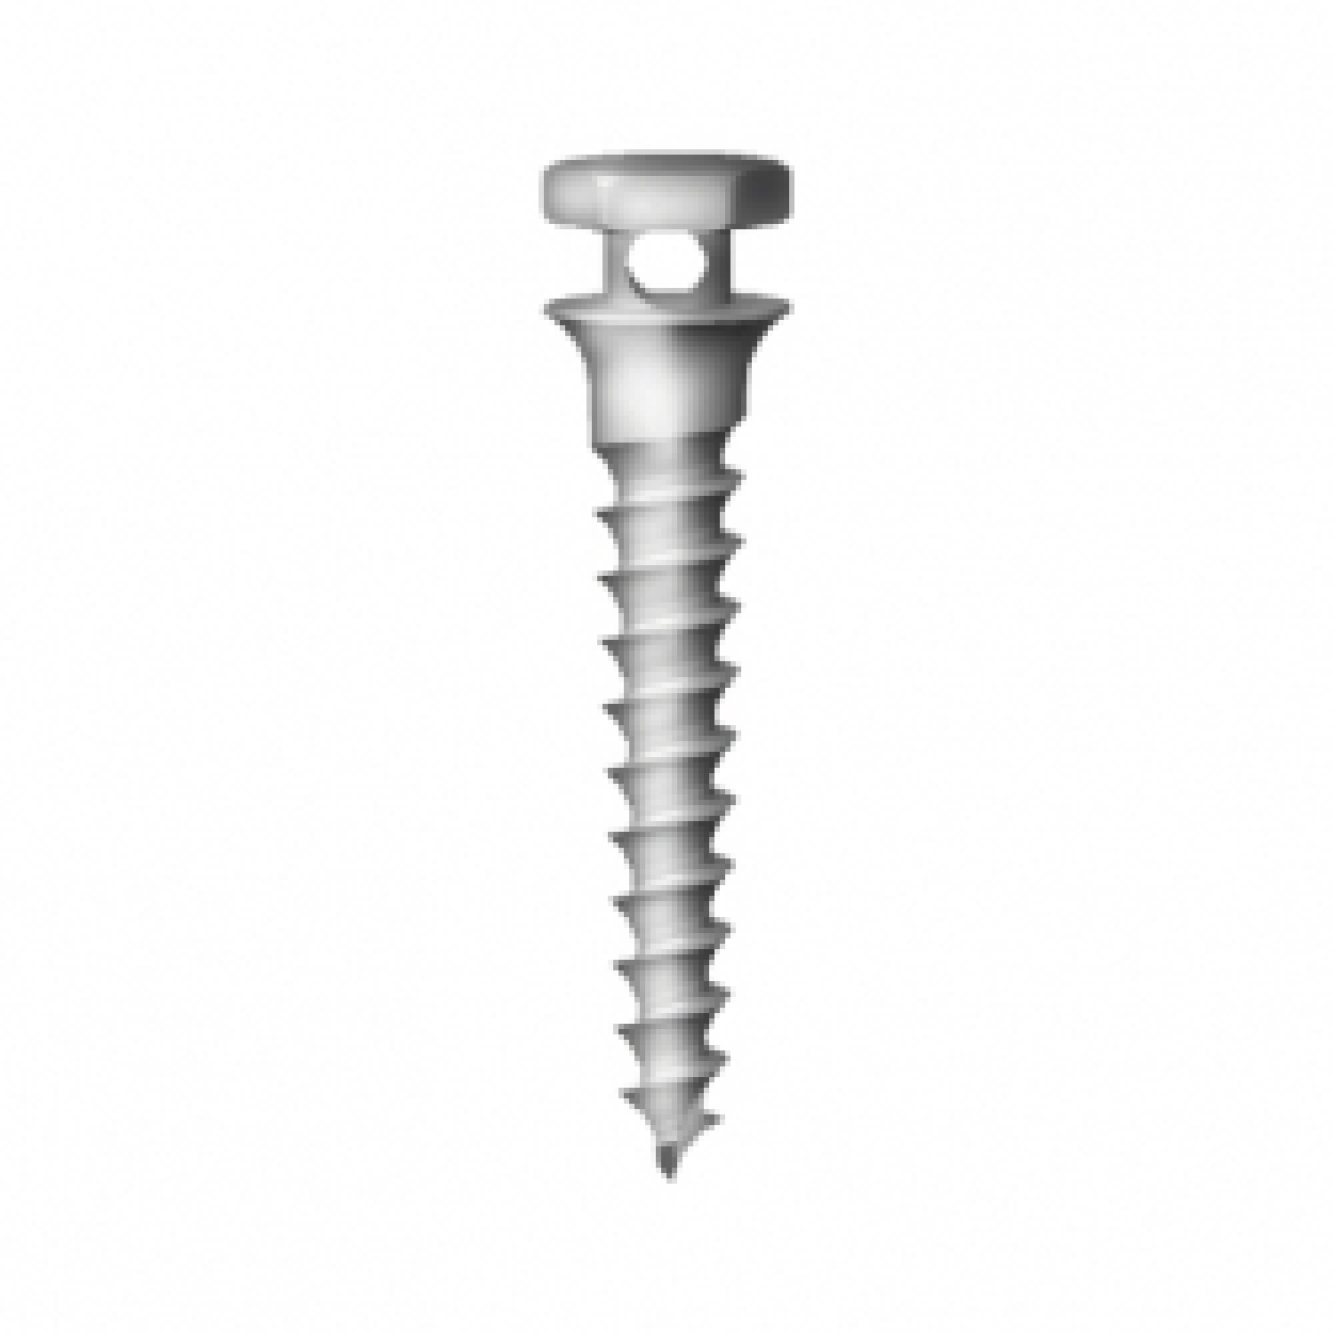 OS-S-14-008 Стоматологический ортодонтический винт для эластичной тяги и проволоки, диаметр 1.4 мм, длина 8 мм, Mr.Curette Tech, Южная Корея